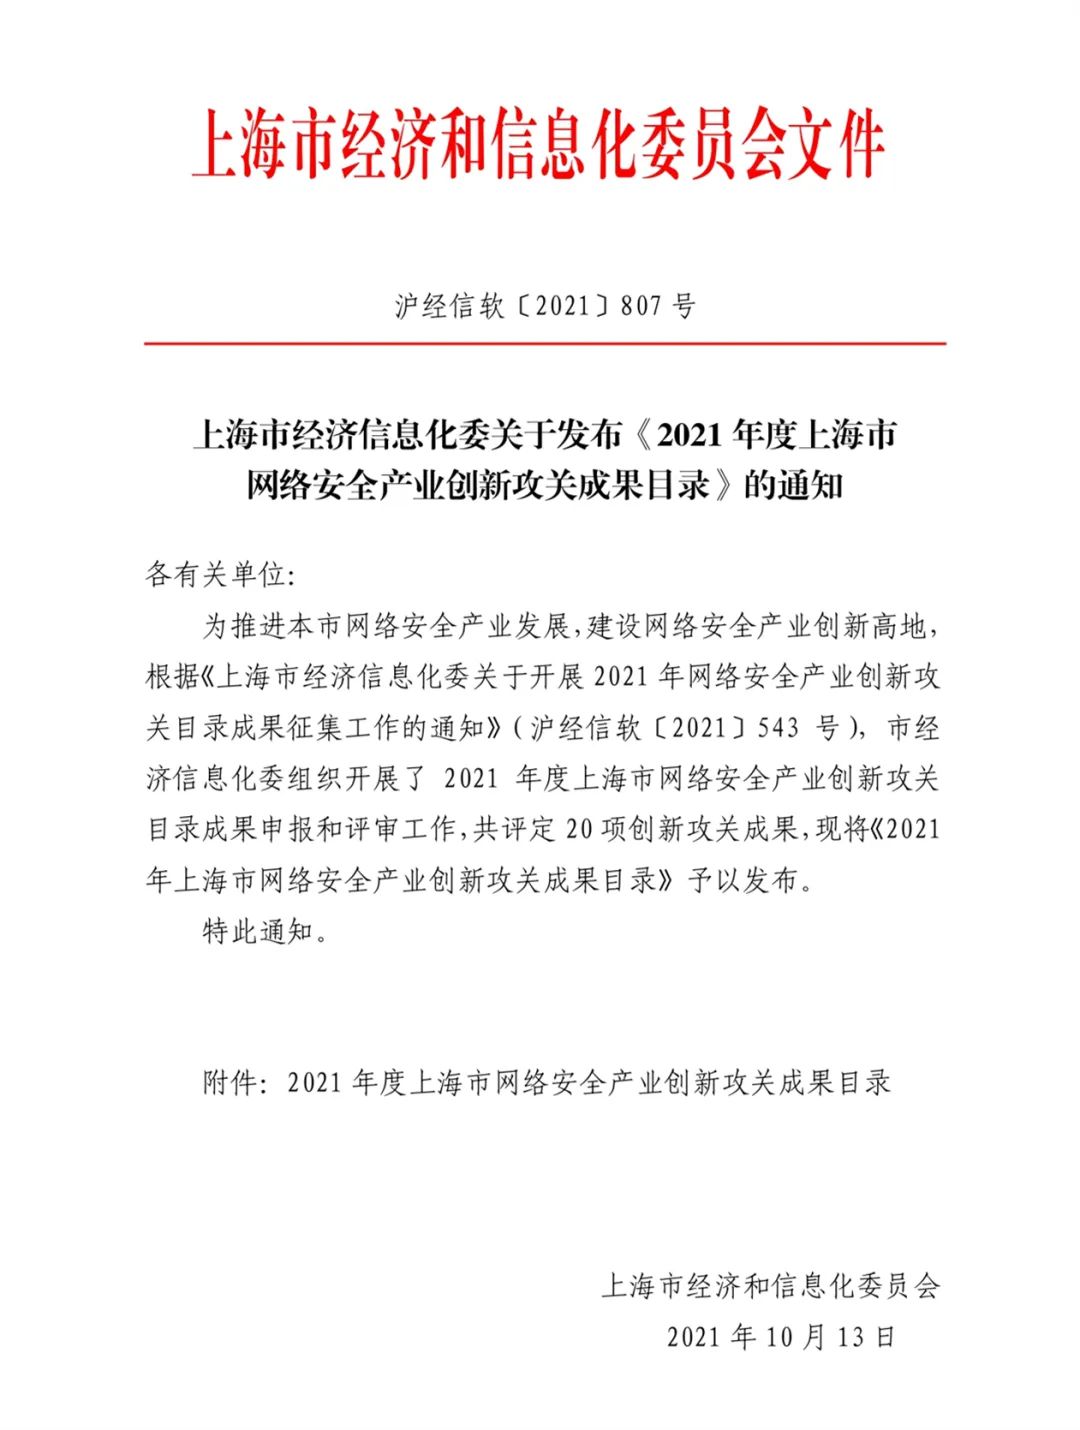 《2021上海网络安全产业创新攻关成果目录》中上海控安入选